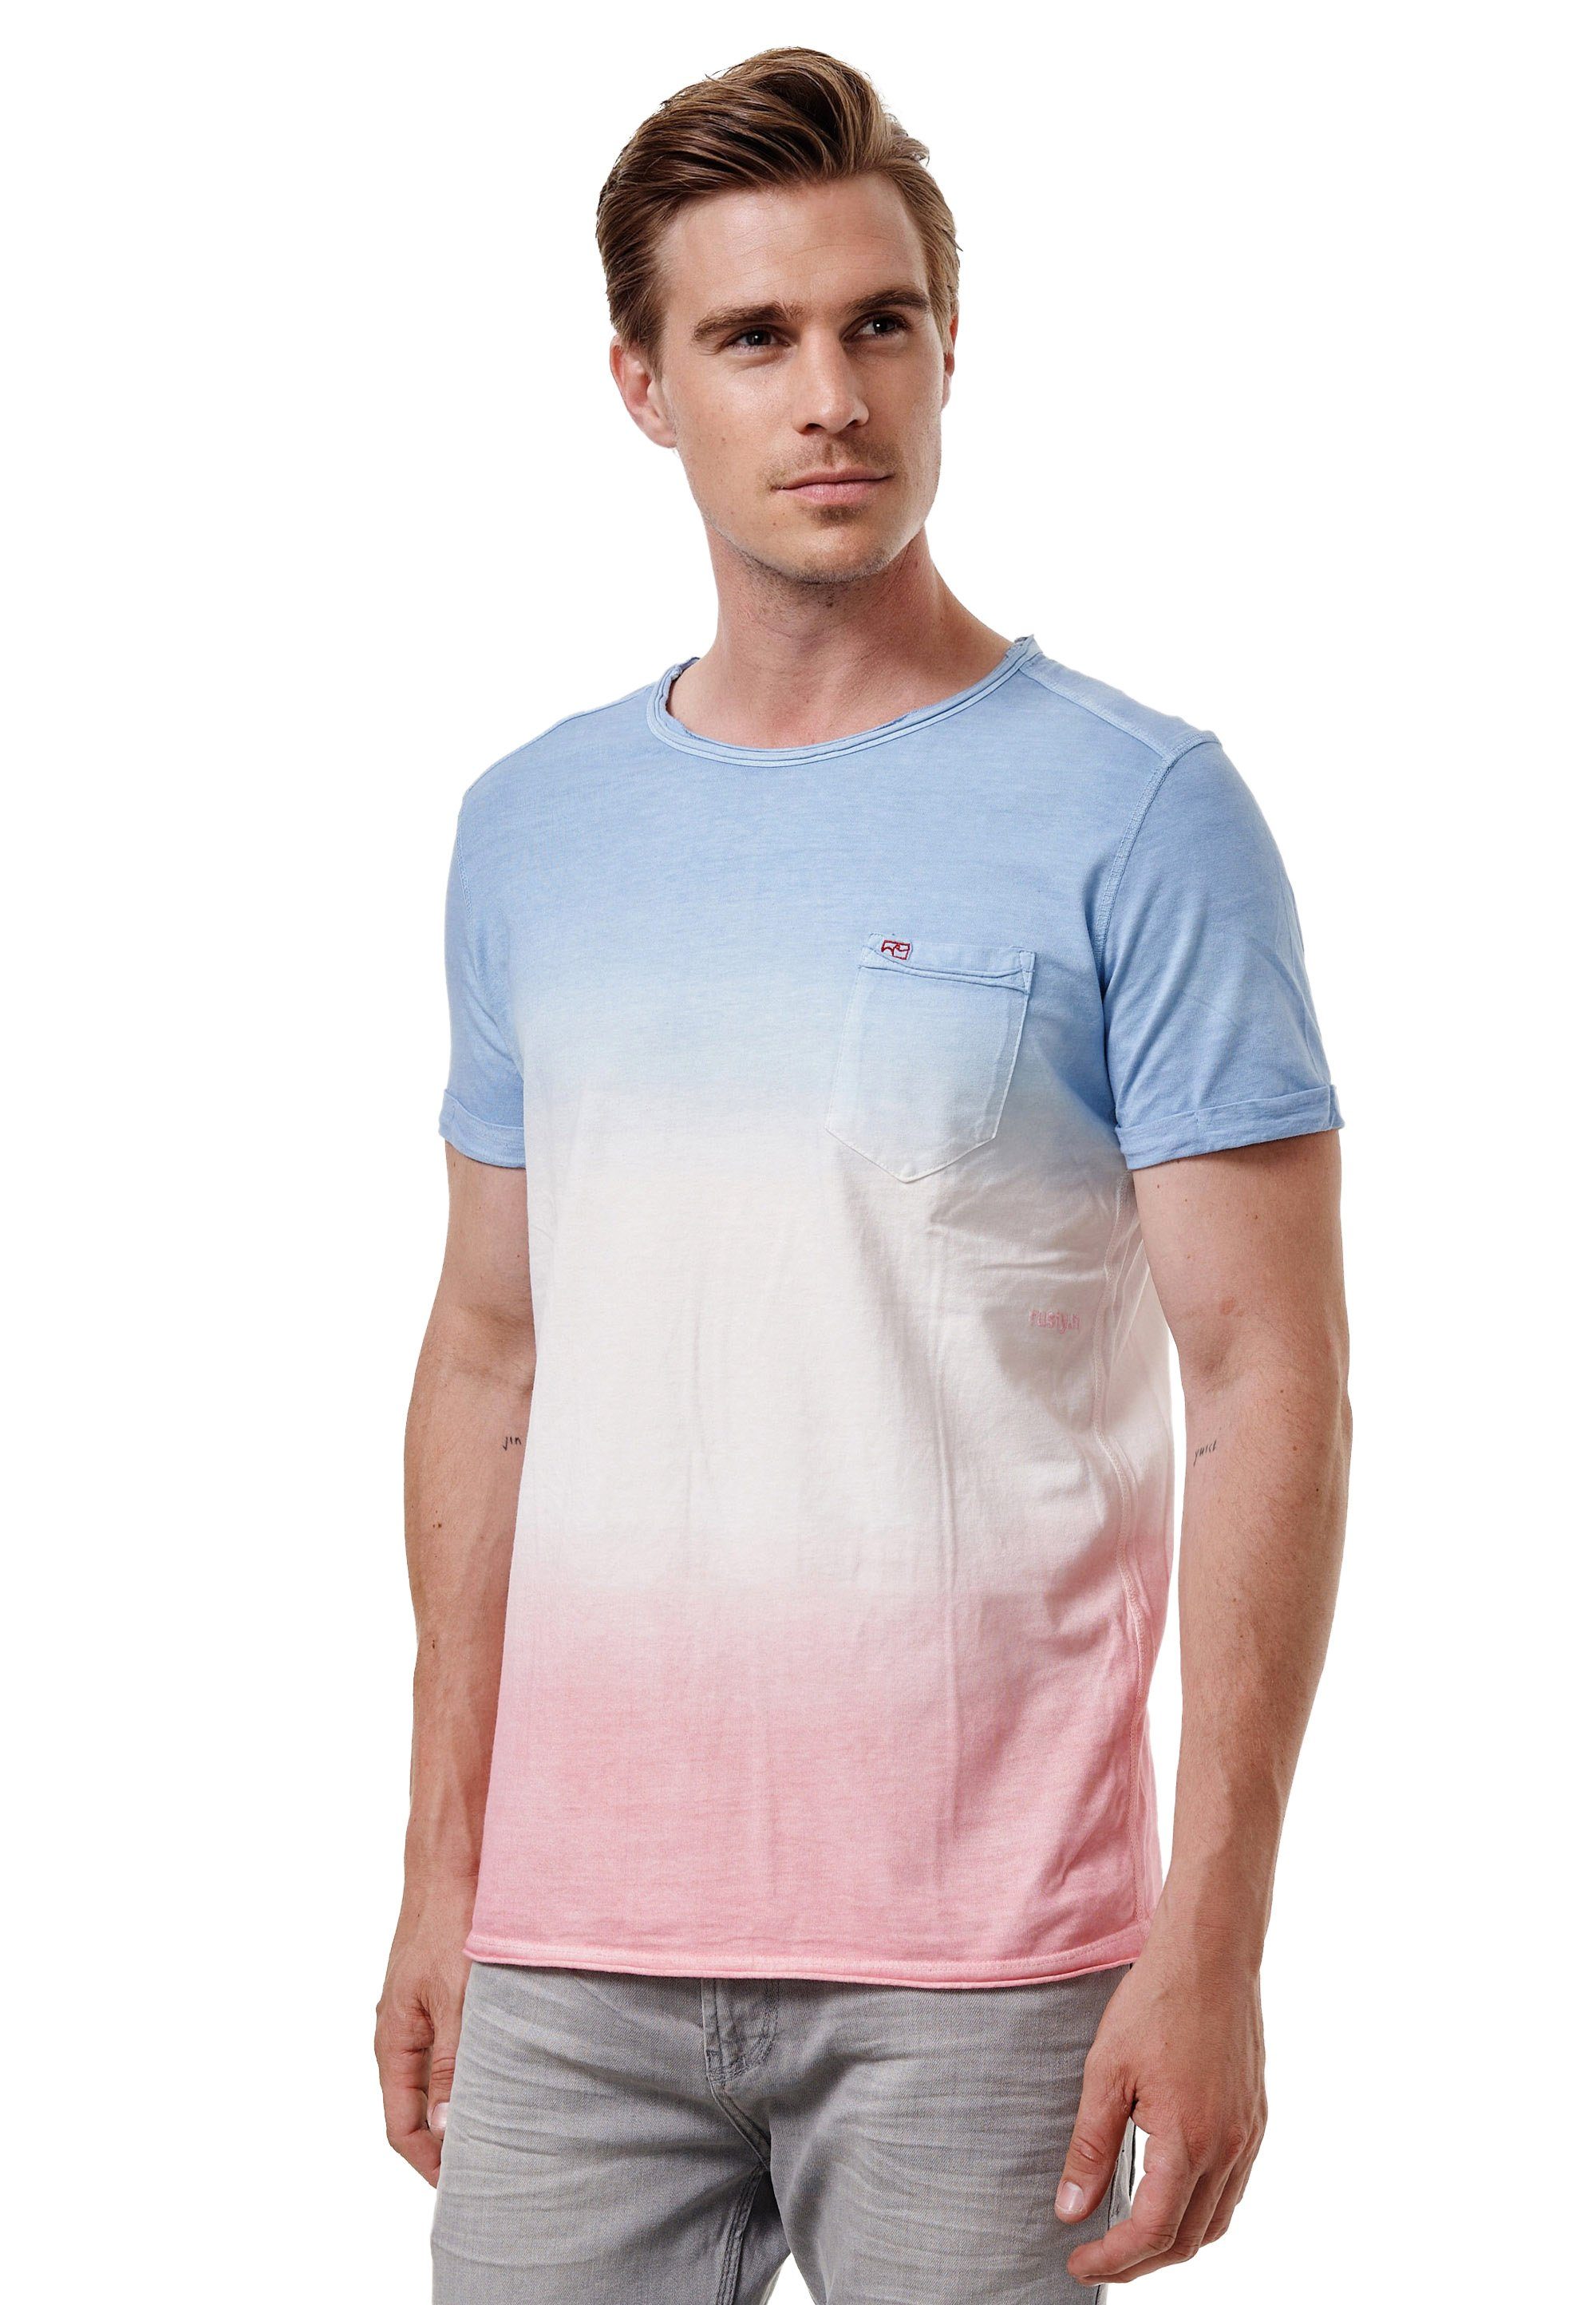 blau-rosa Rusty Used-Optik T-Shirt toller Neal in